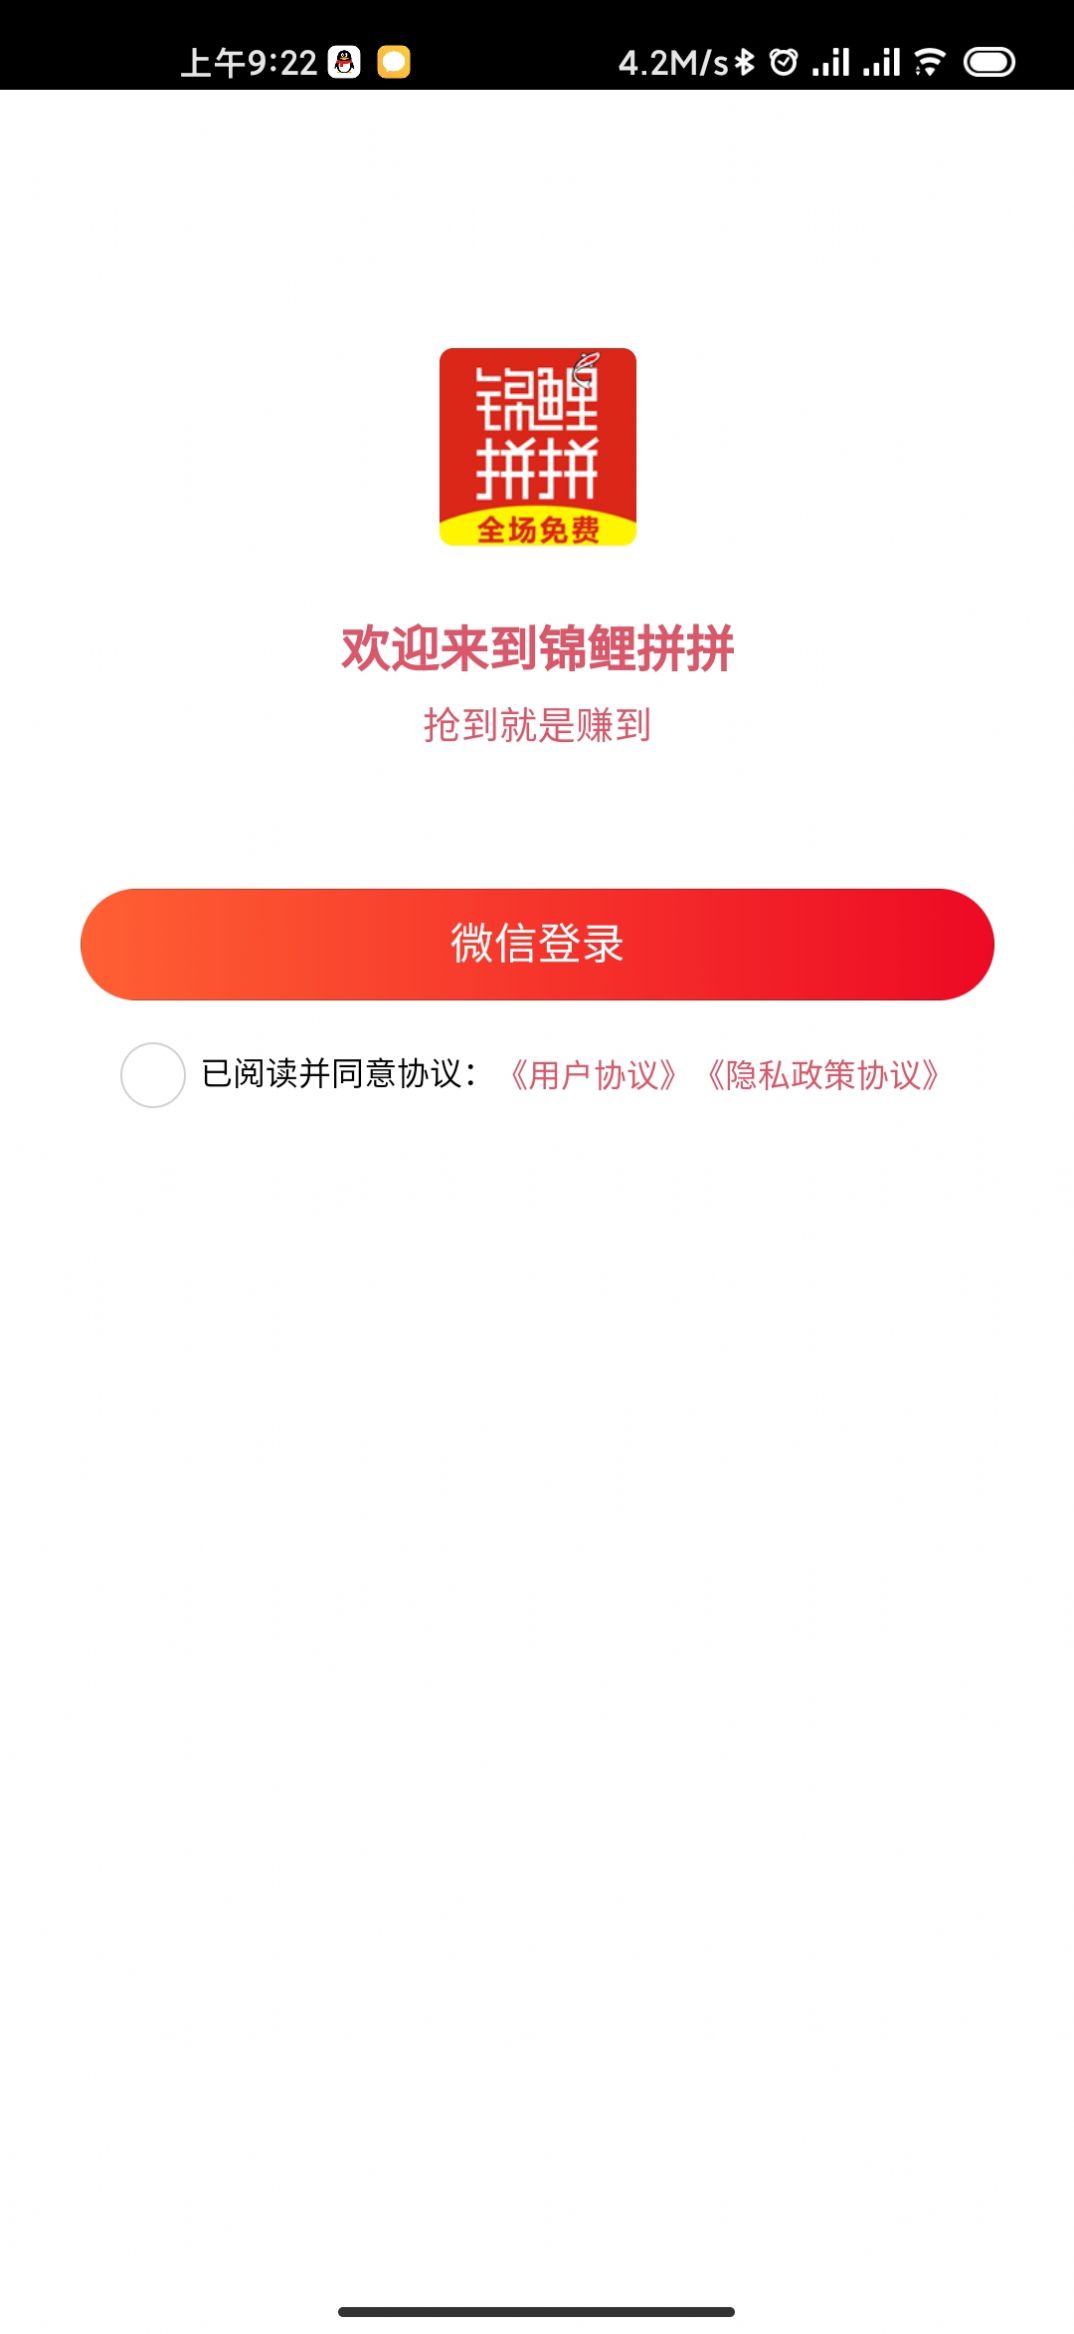 锦鲤拼拼购物app官方版图片1